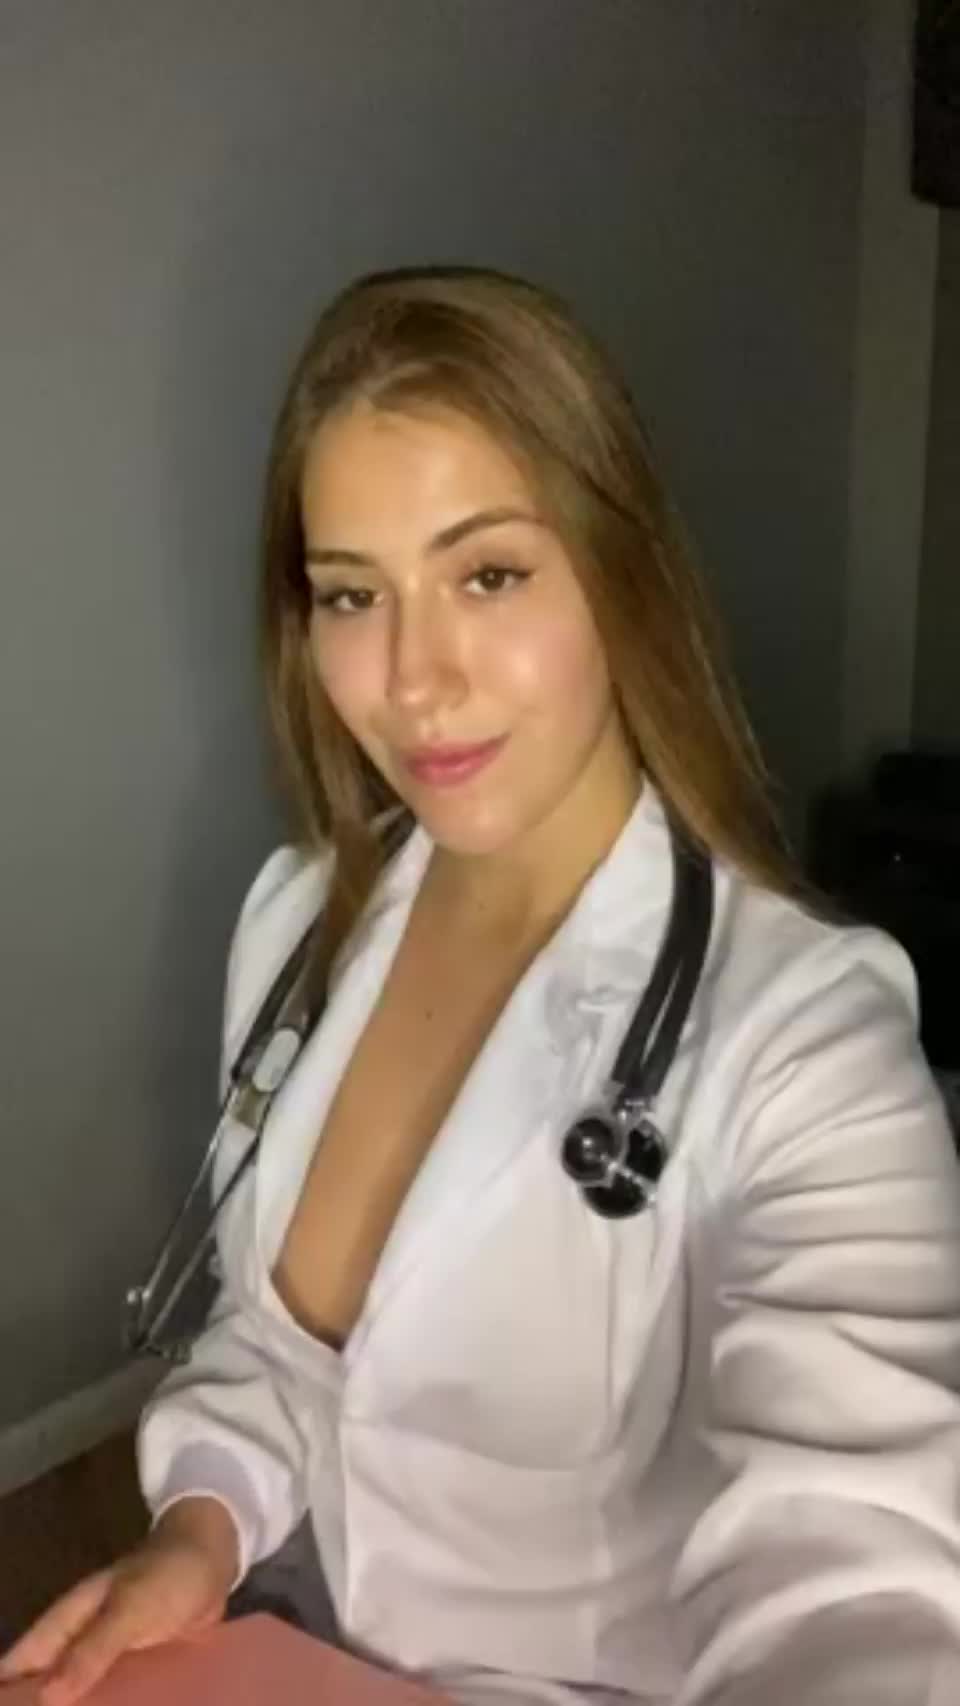 Nude Nurse - Beautiful Nude Nurse Porn Video by sweetestmila